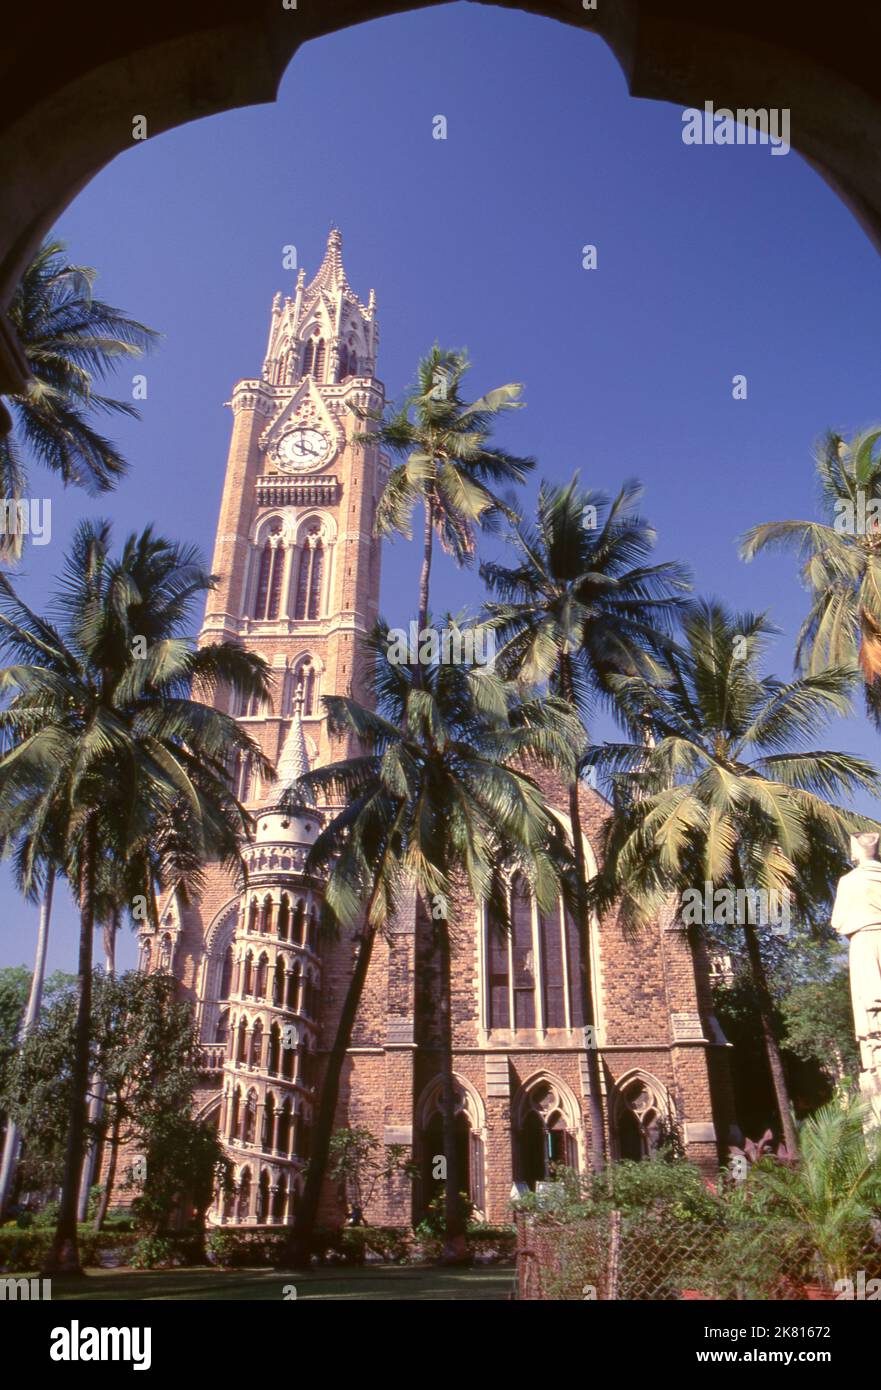 Inde: La tour de l'horloge du Rajabai et la bibliothèque de l'université, Université de Mumbai, fort campus, Mumbai, construit dans le style gothique‚ Bombay. L'Université de Bombay, telle qu'elle était connue à l'origine, a été créée en 1857. La tour Rajabai et l'édifice de la bibliothèque ont été conçus par Sir George Gilbert Scott et achevés en 1878. Banque D'Images